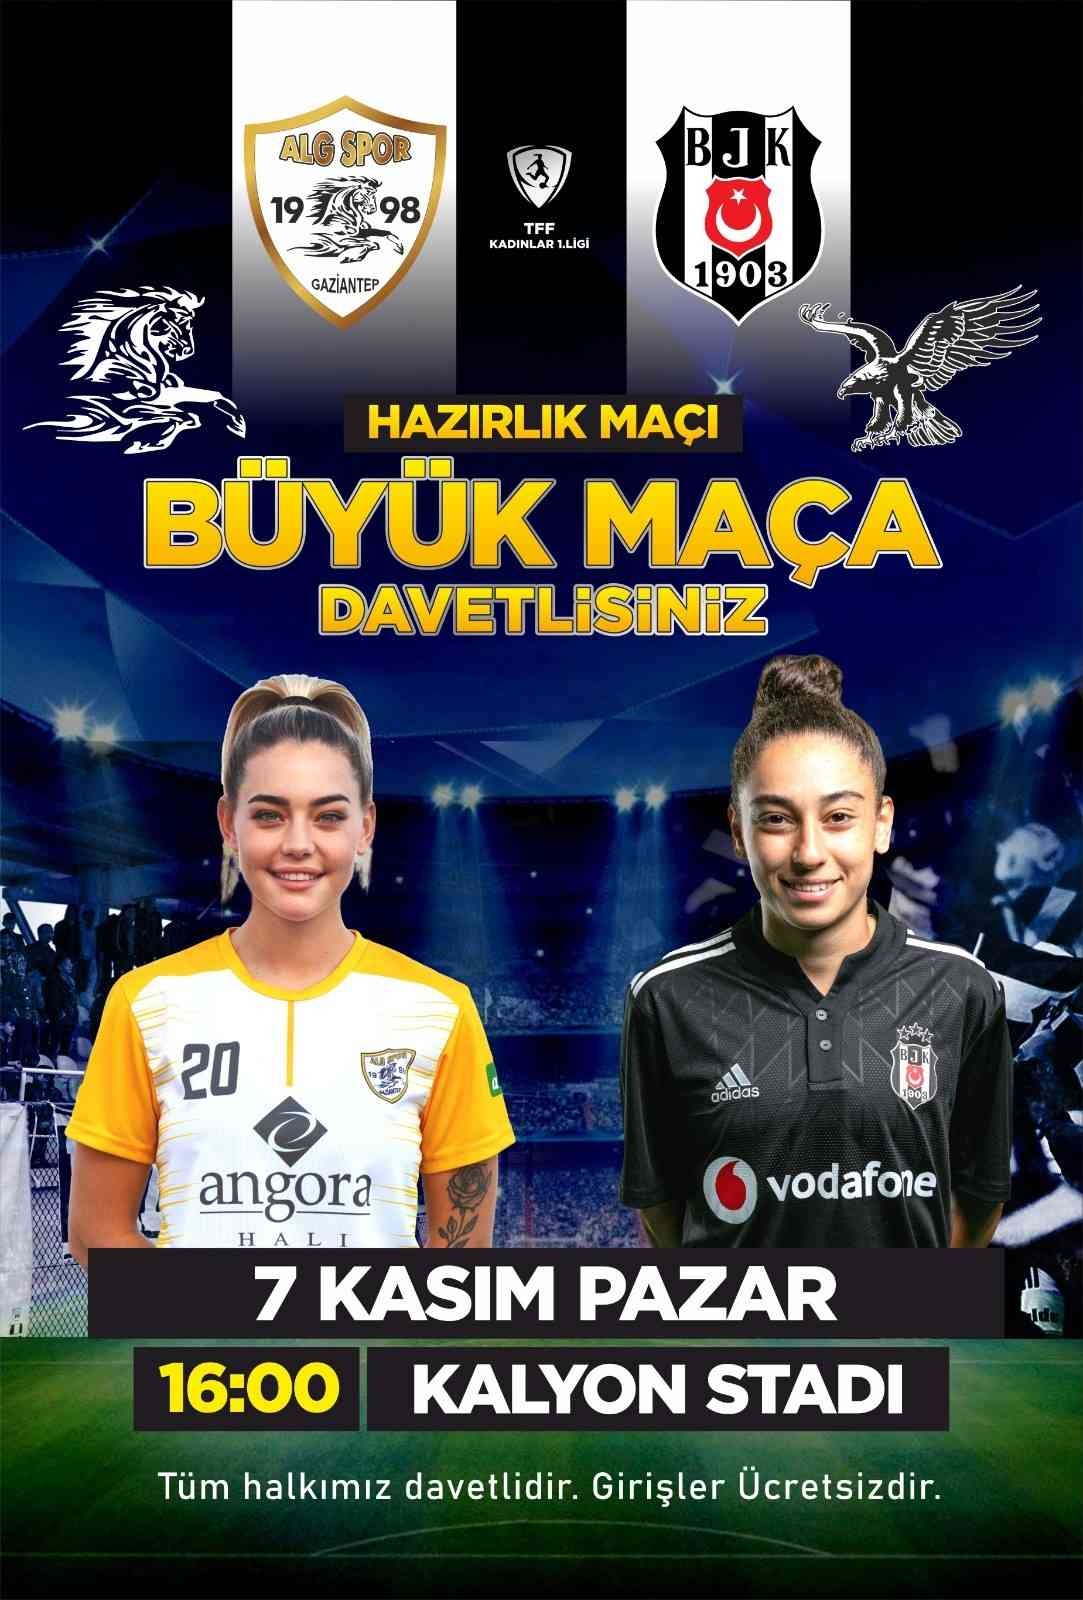 ALG Spor hazırlık maçında Beşiktaş’ı konuk edecek #gaziantep